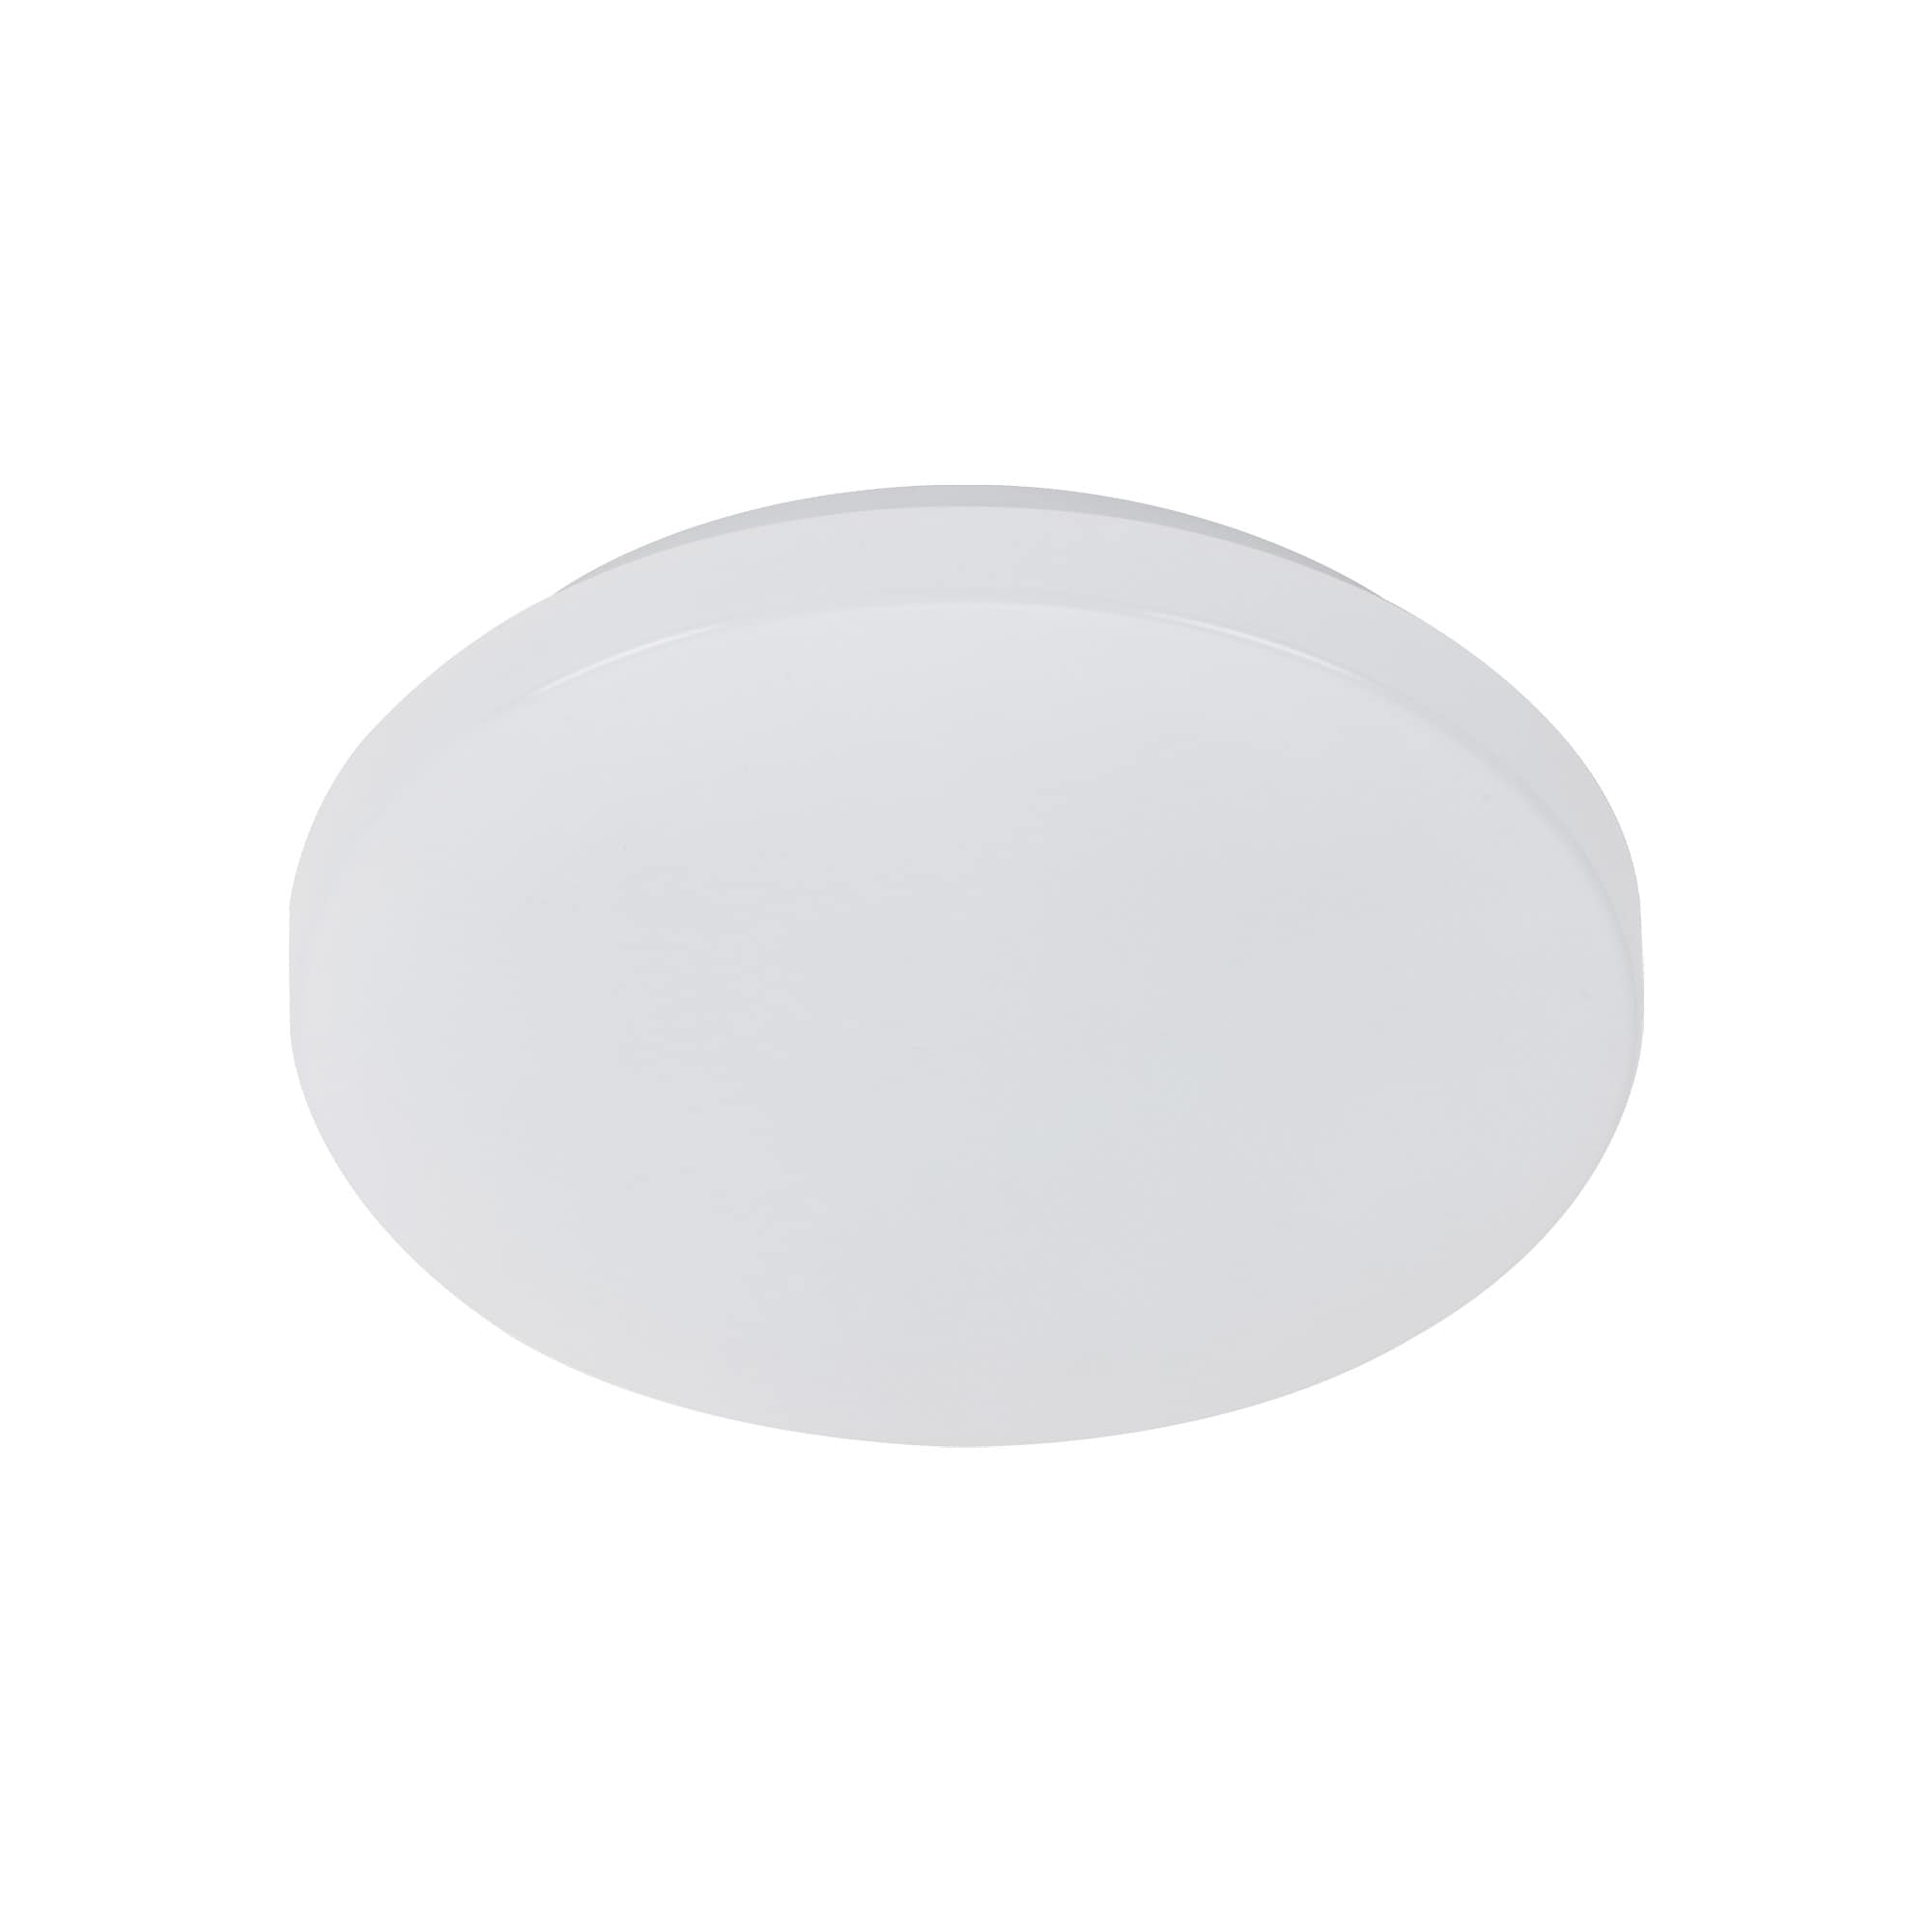 TELEFUNKEN Sensor LED Deckenleuchte, Ø 29 cm, 12 W, Weiß